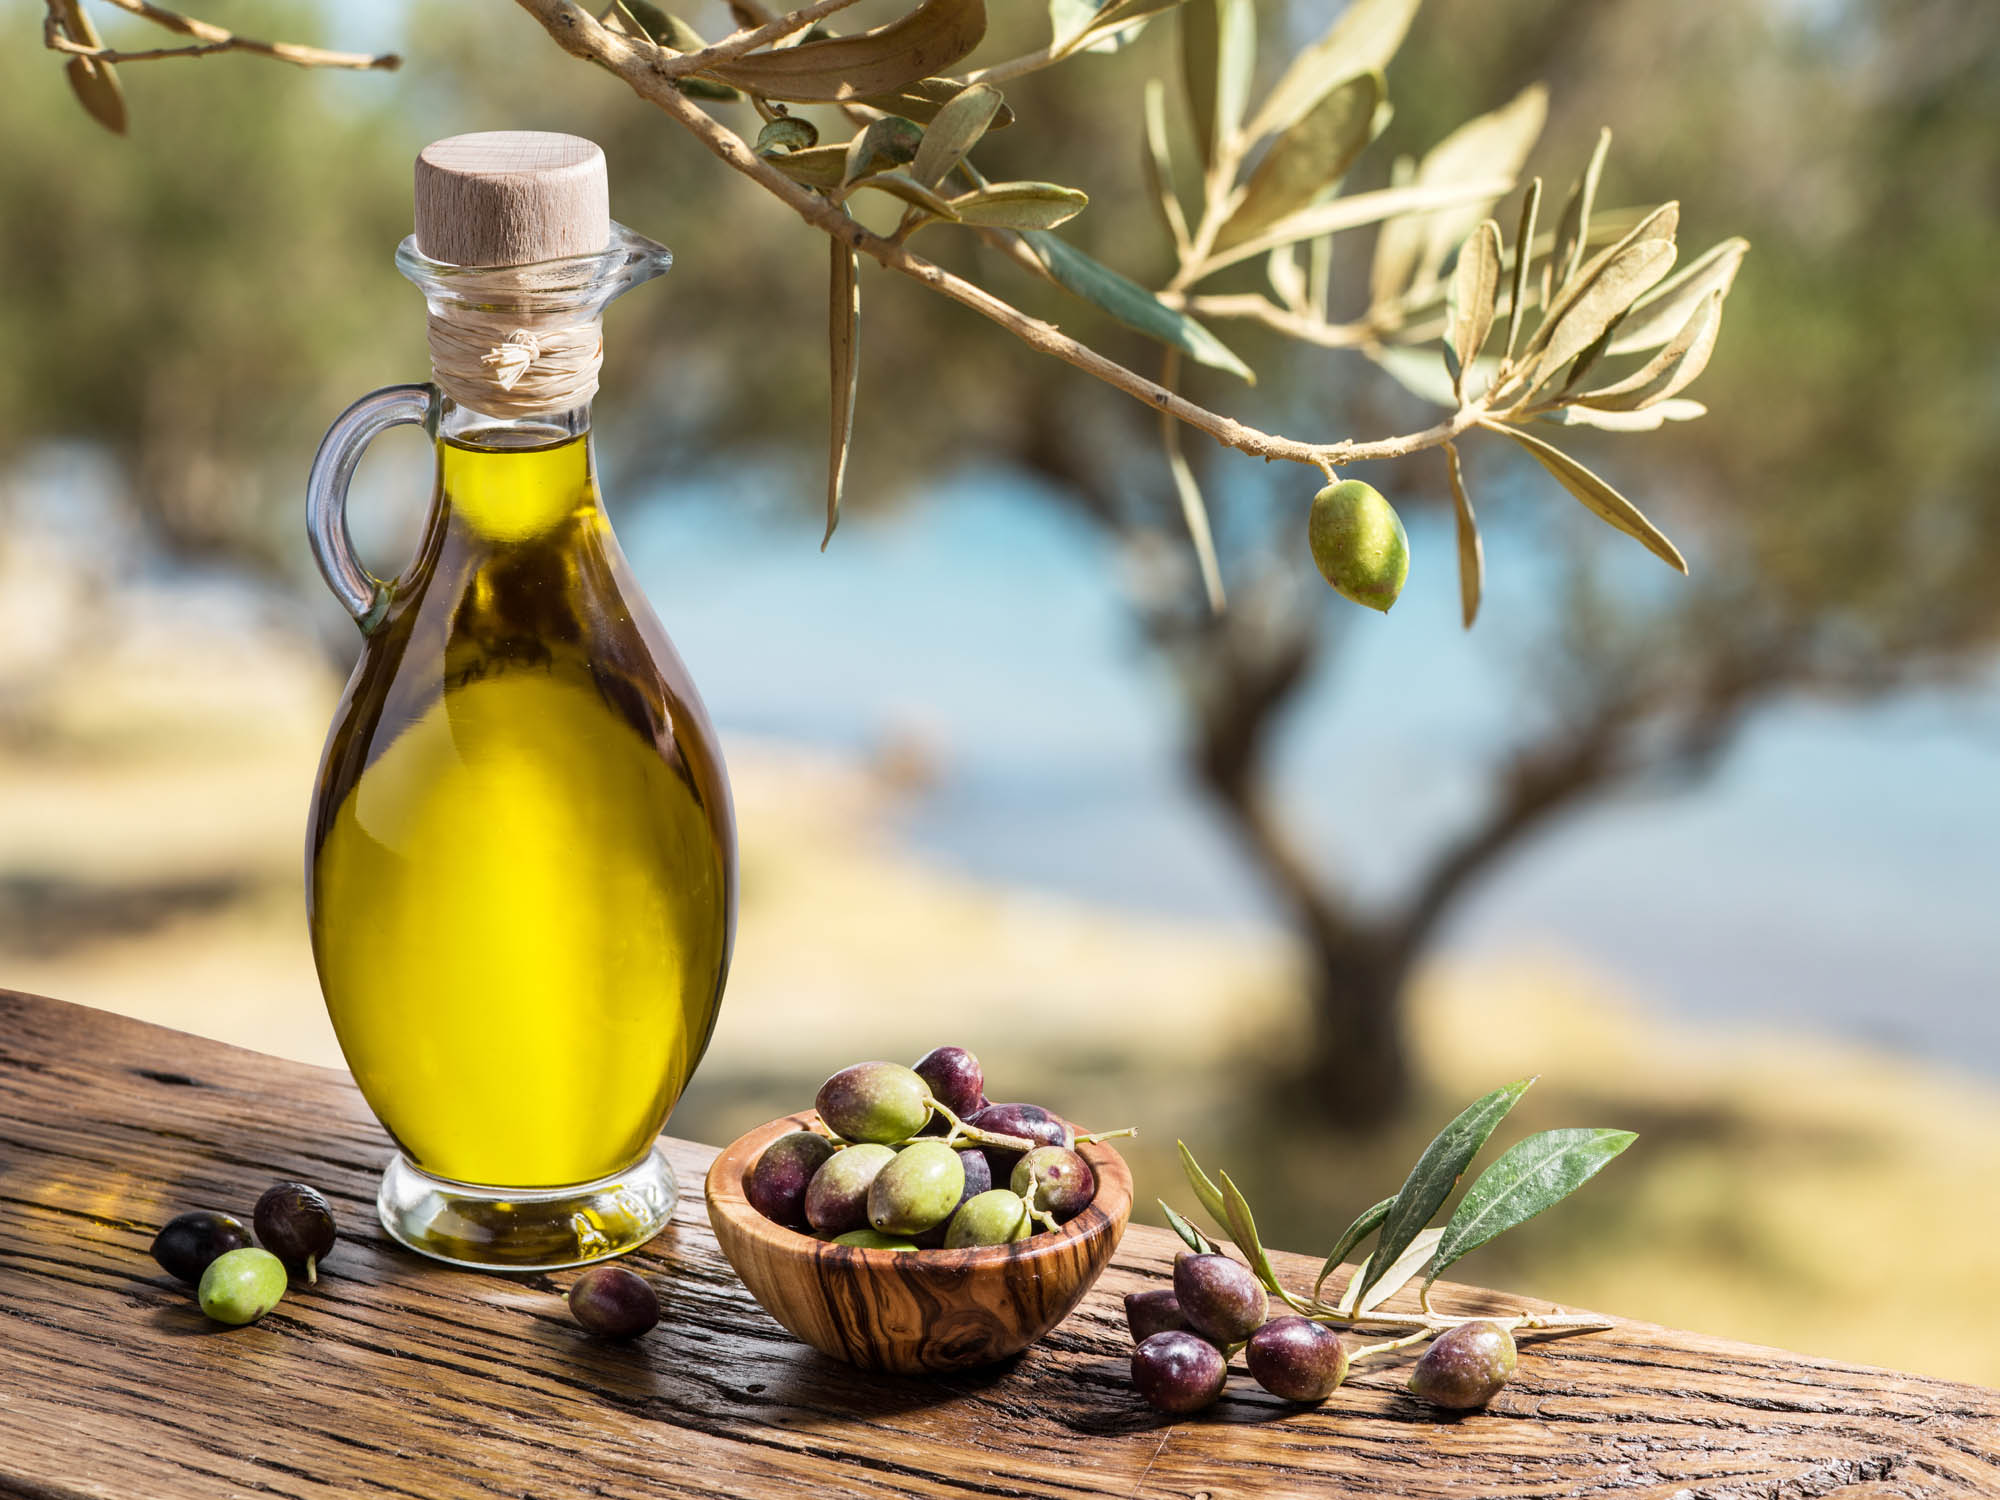 oliwa z oliwek w ładnej butelce stoi w gaju oliwnym